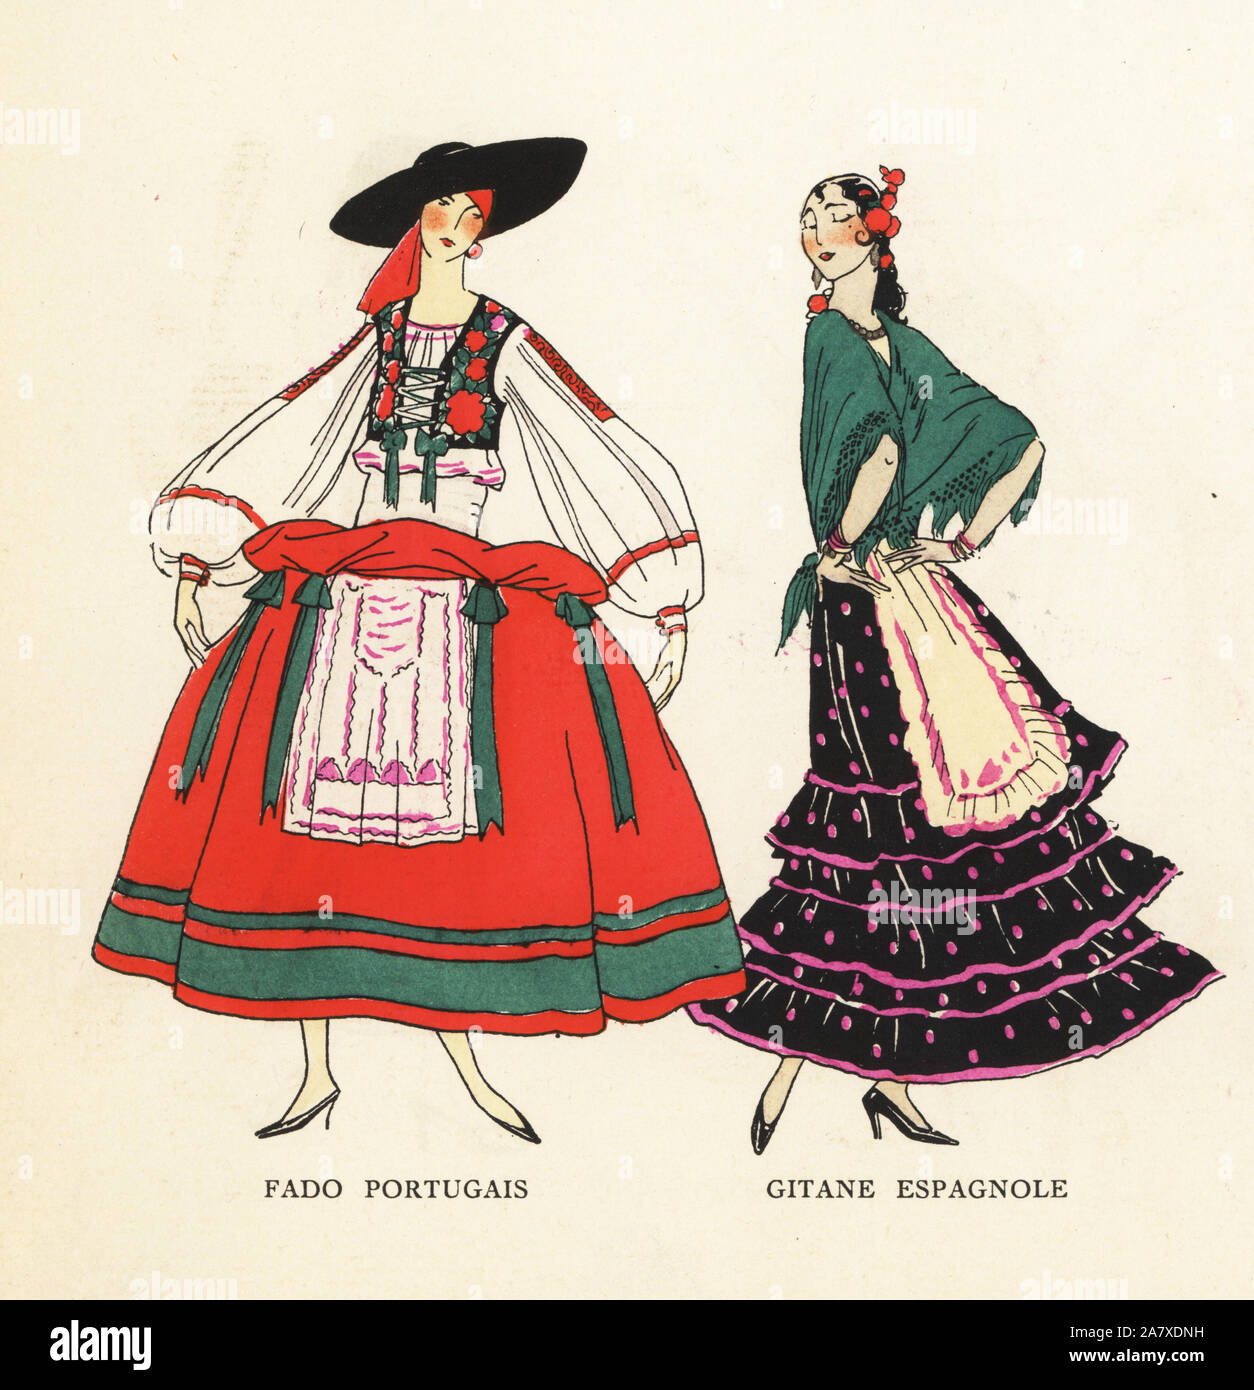 Frauen in Kostüme der portugiesischen Fado und eine Spanische Zigeuner. Papierkörbe pochoir (Schablone) Lithographie von der Französischen luxus Mode Magazin Kunst, Gicht, Beauté, 1925. Stockfoto